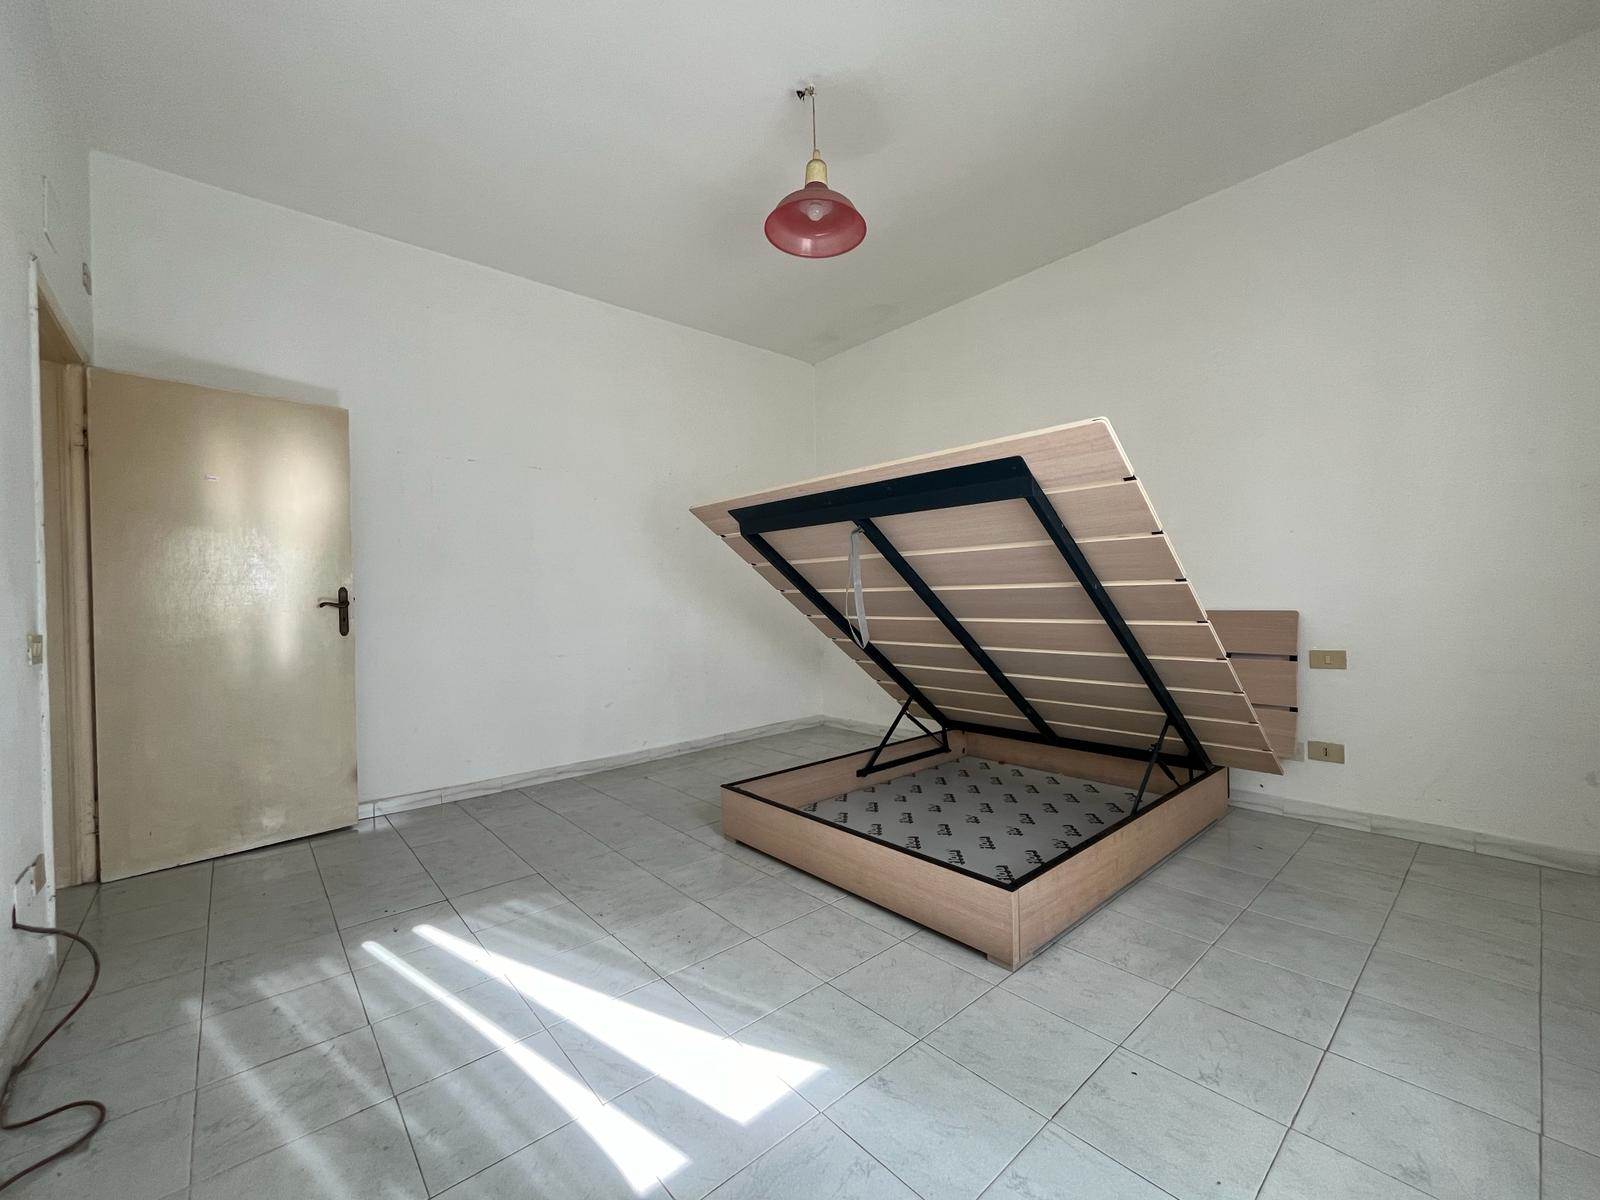 Appartamento in vendita a Bibbona, 2 locali, zona alifornia, prezzo € 75.000 | PortaleAgenzieImmobiliari.it